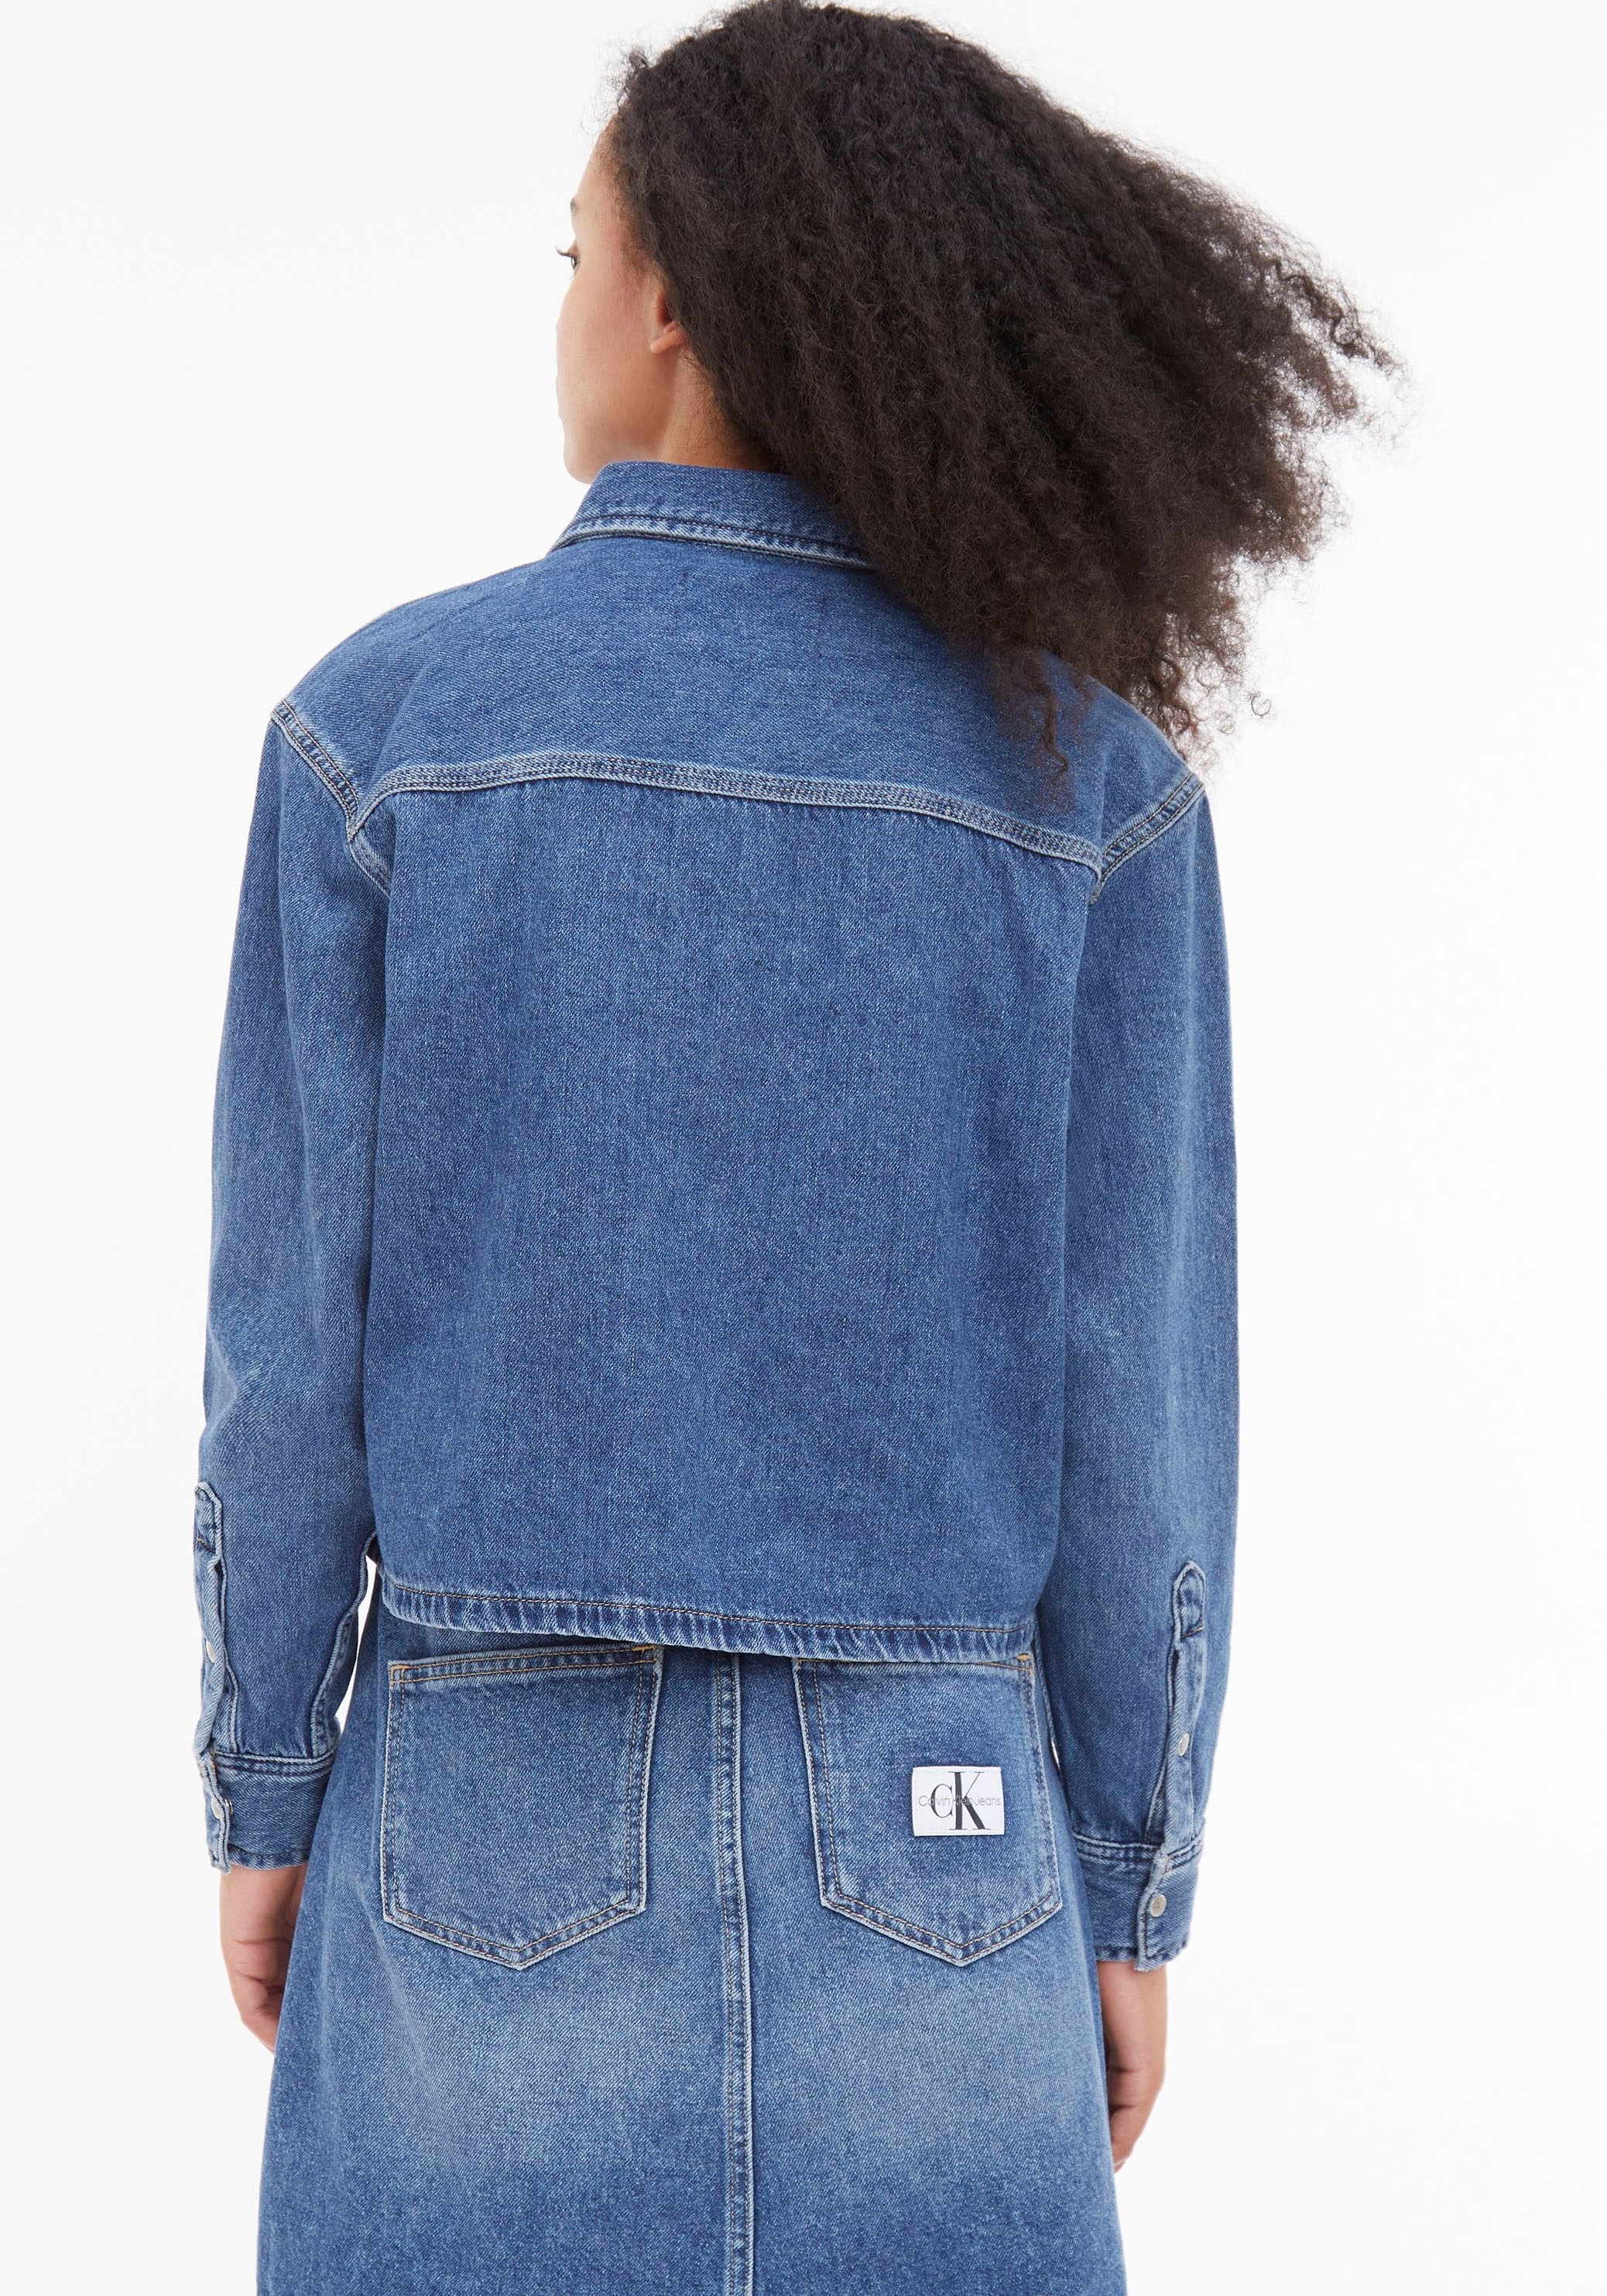 Calvin Klein Jeans Jeansbluse, Hemdblusenkragen für BAUR kaufen mit 